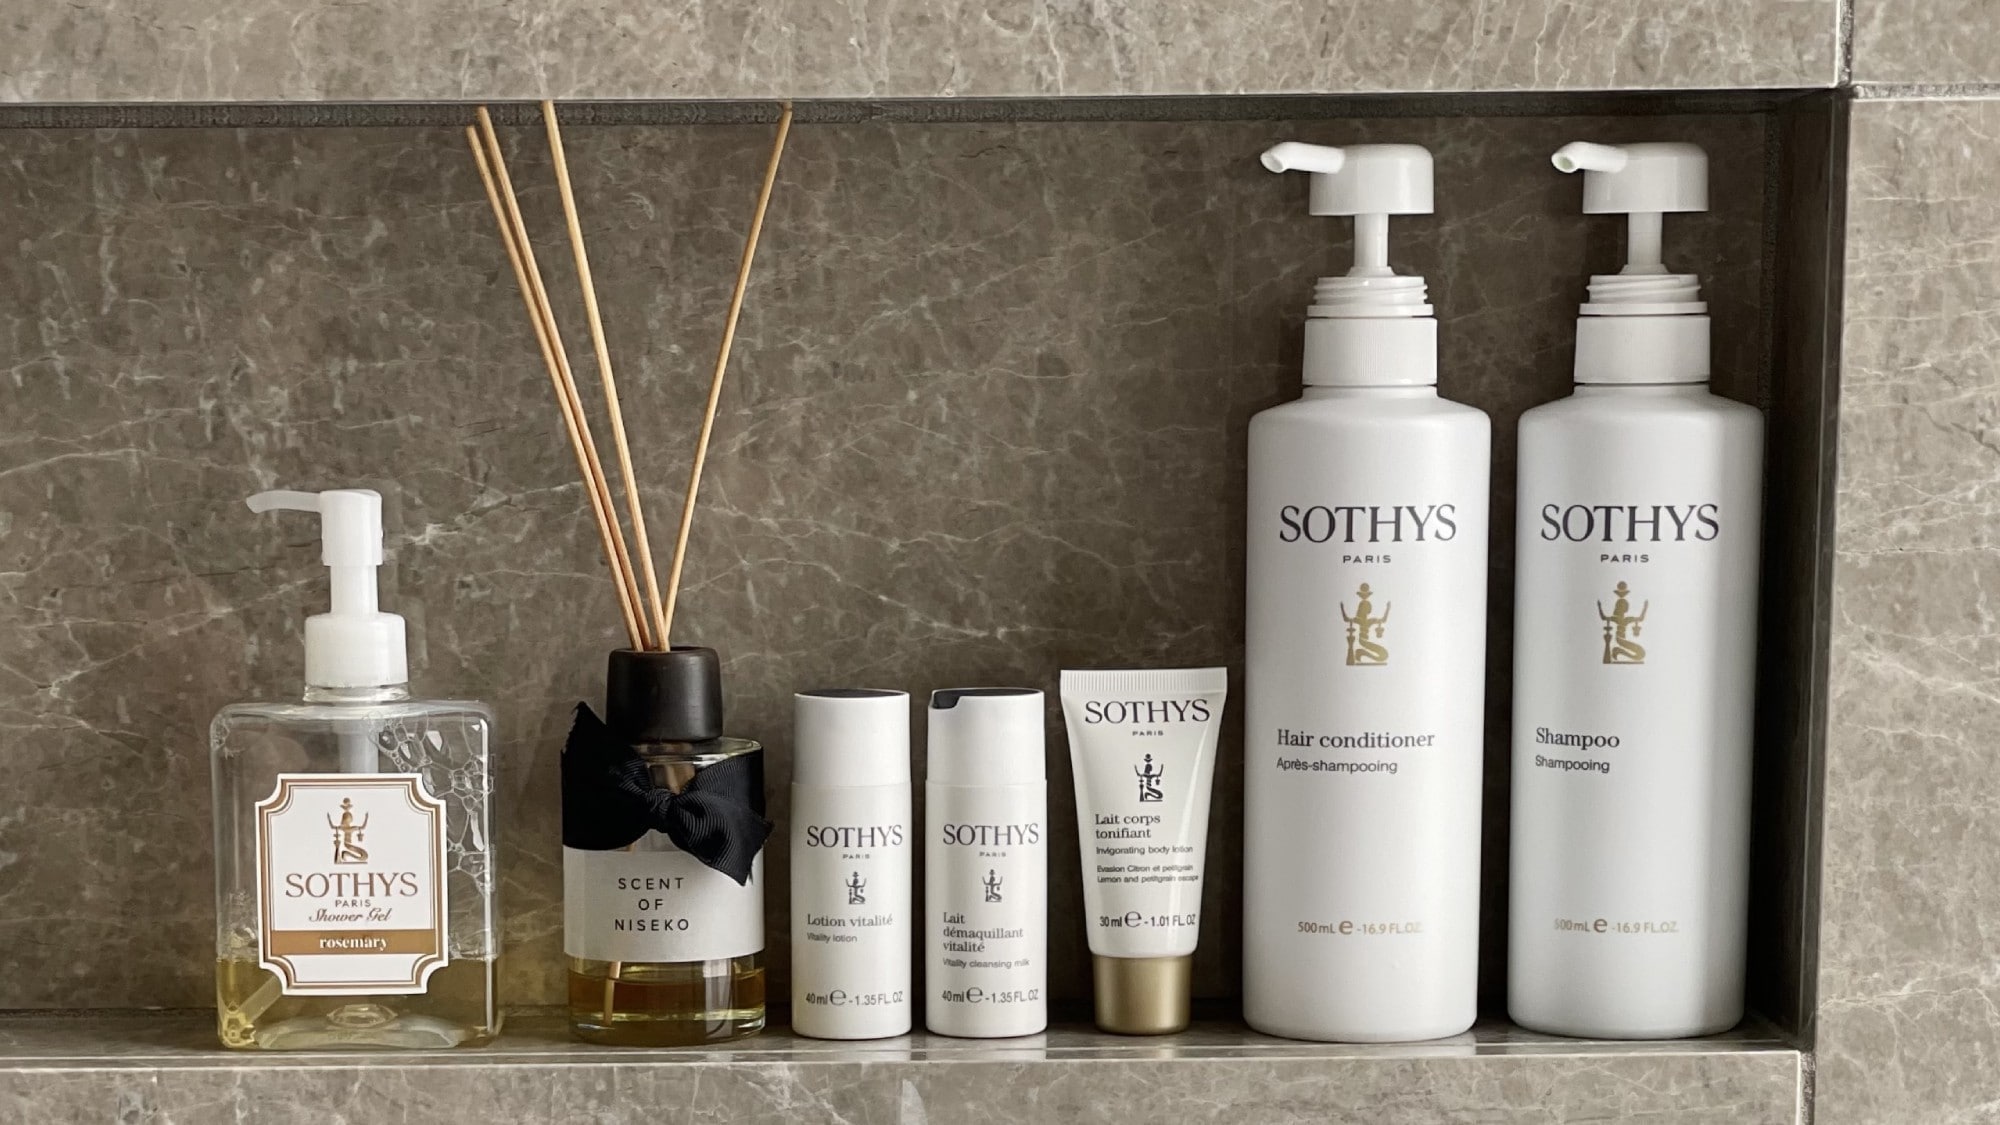 ◆ 客房設施為法國奢侈品牌“Sotis”。與當地酒窖合作的酒店原創肥皂。